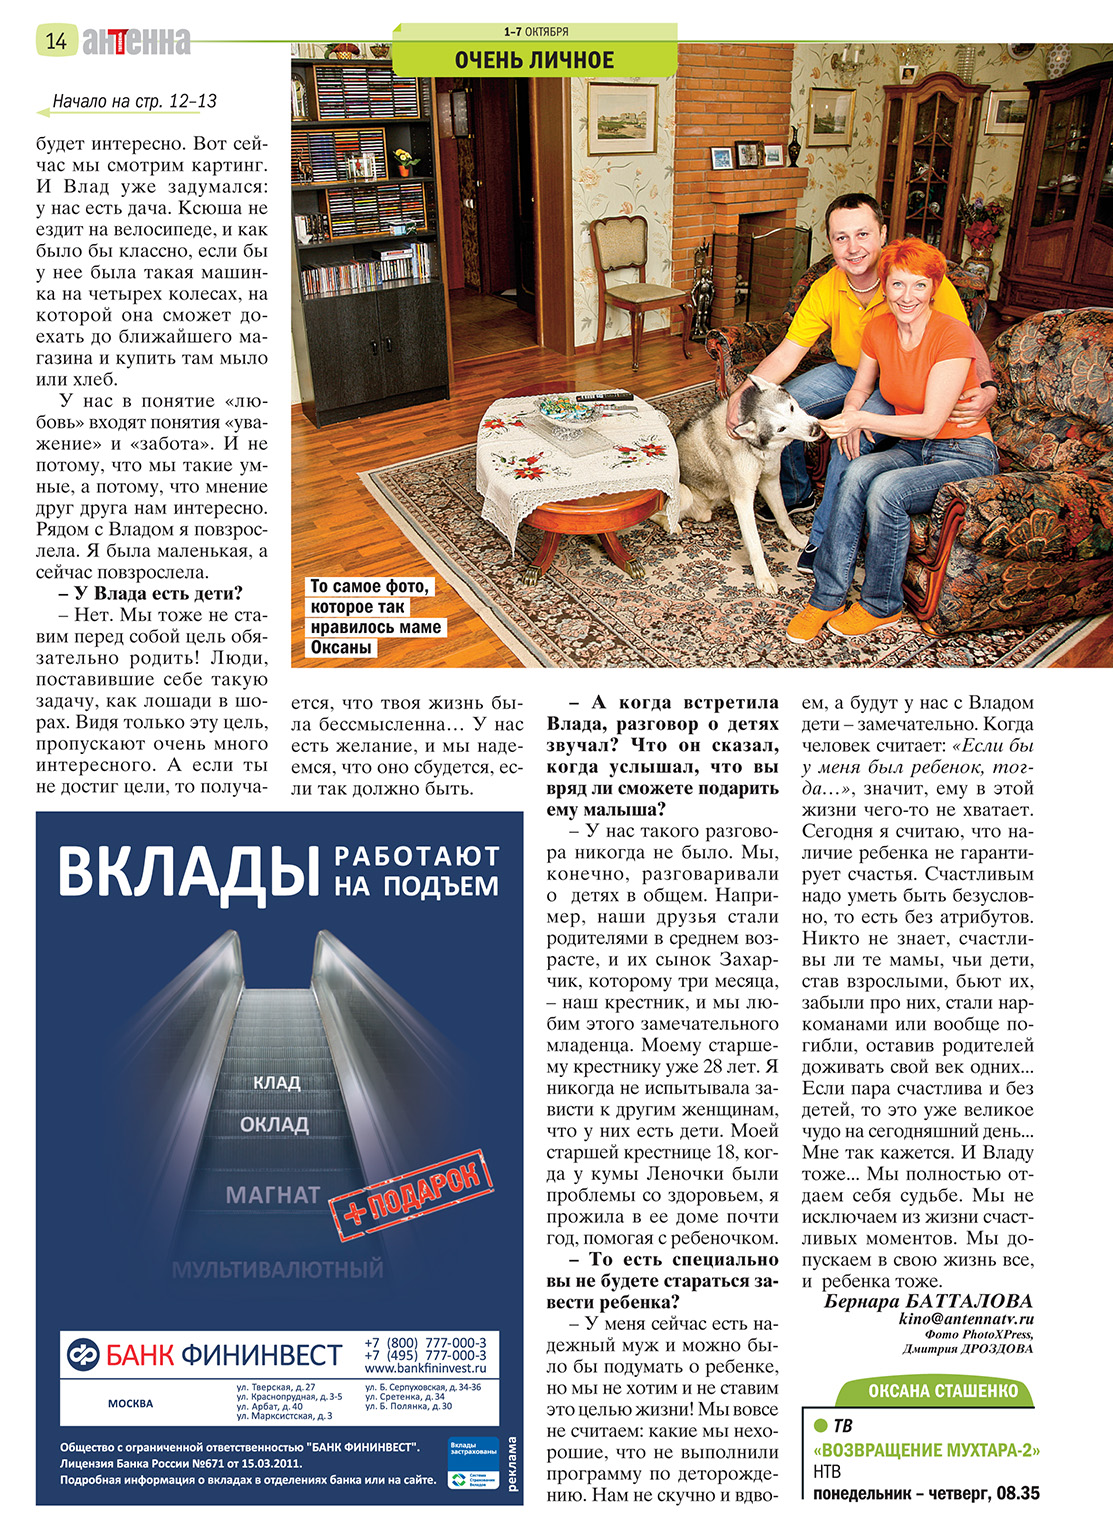 Статья в журнале Антенна №41 Оксана Сташенко